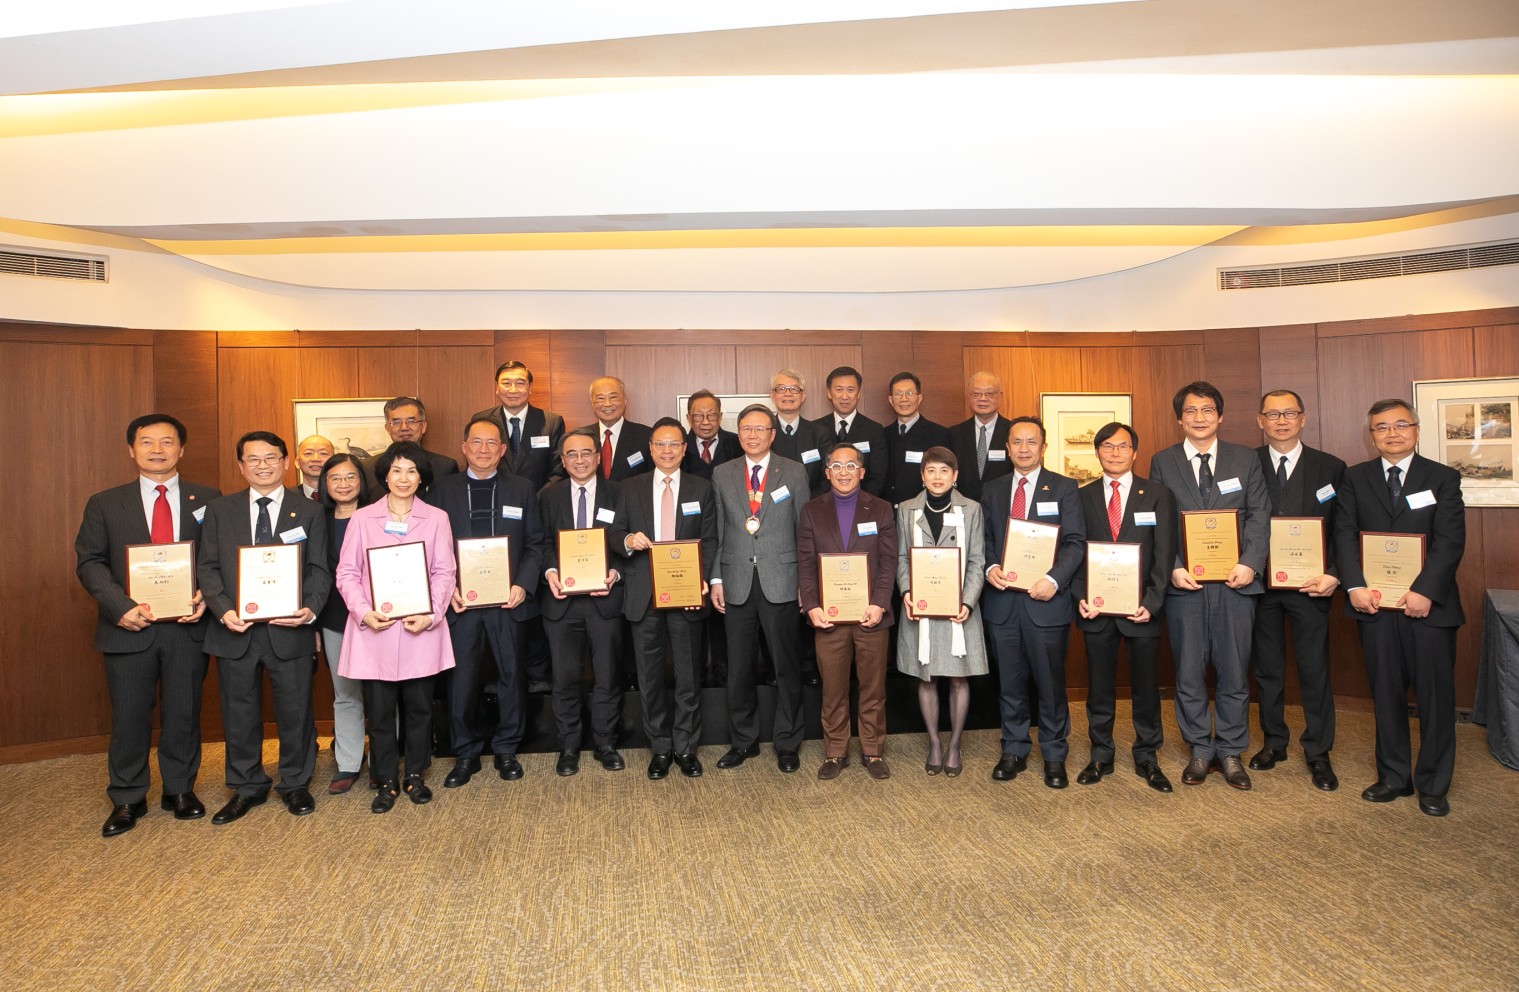 秦泗钊教授（前排左一）及邝得互教授（前排右四）同为2023年度香港工程科学院的13位新任院士之一，他们均以出色的专业知识为科学及工程学领域作出重大贡献。